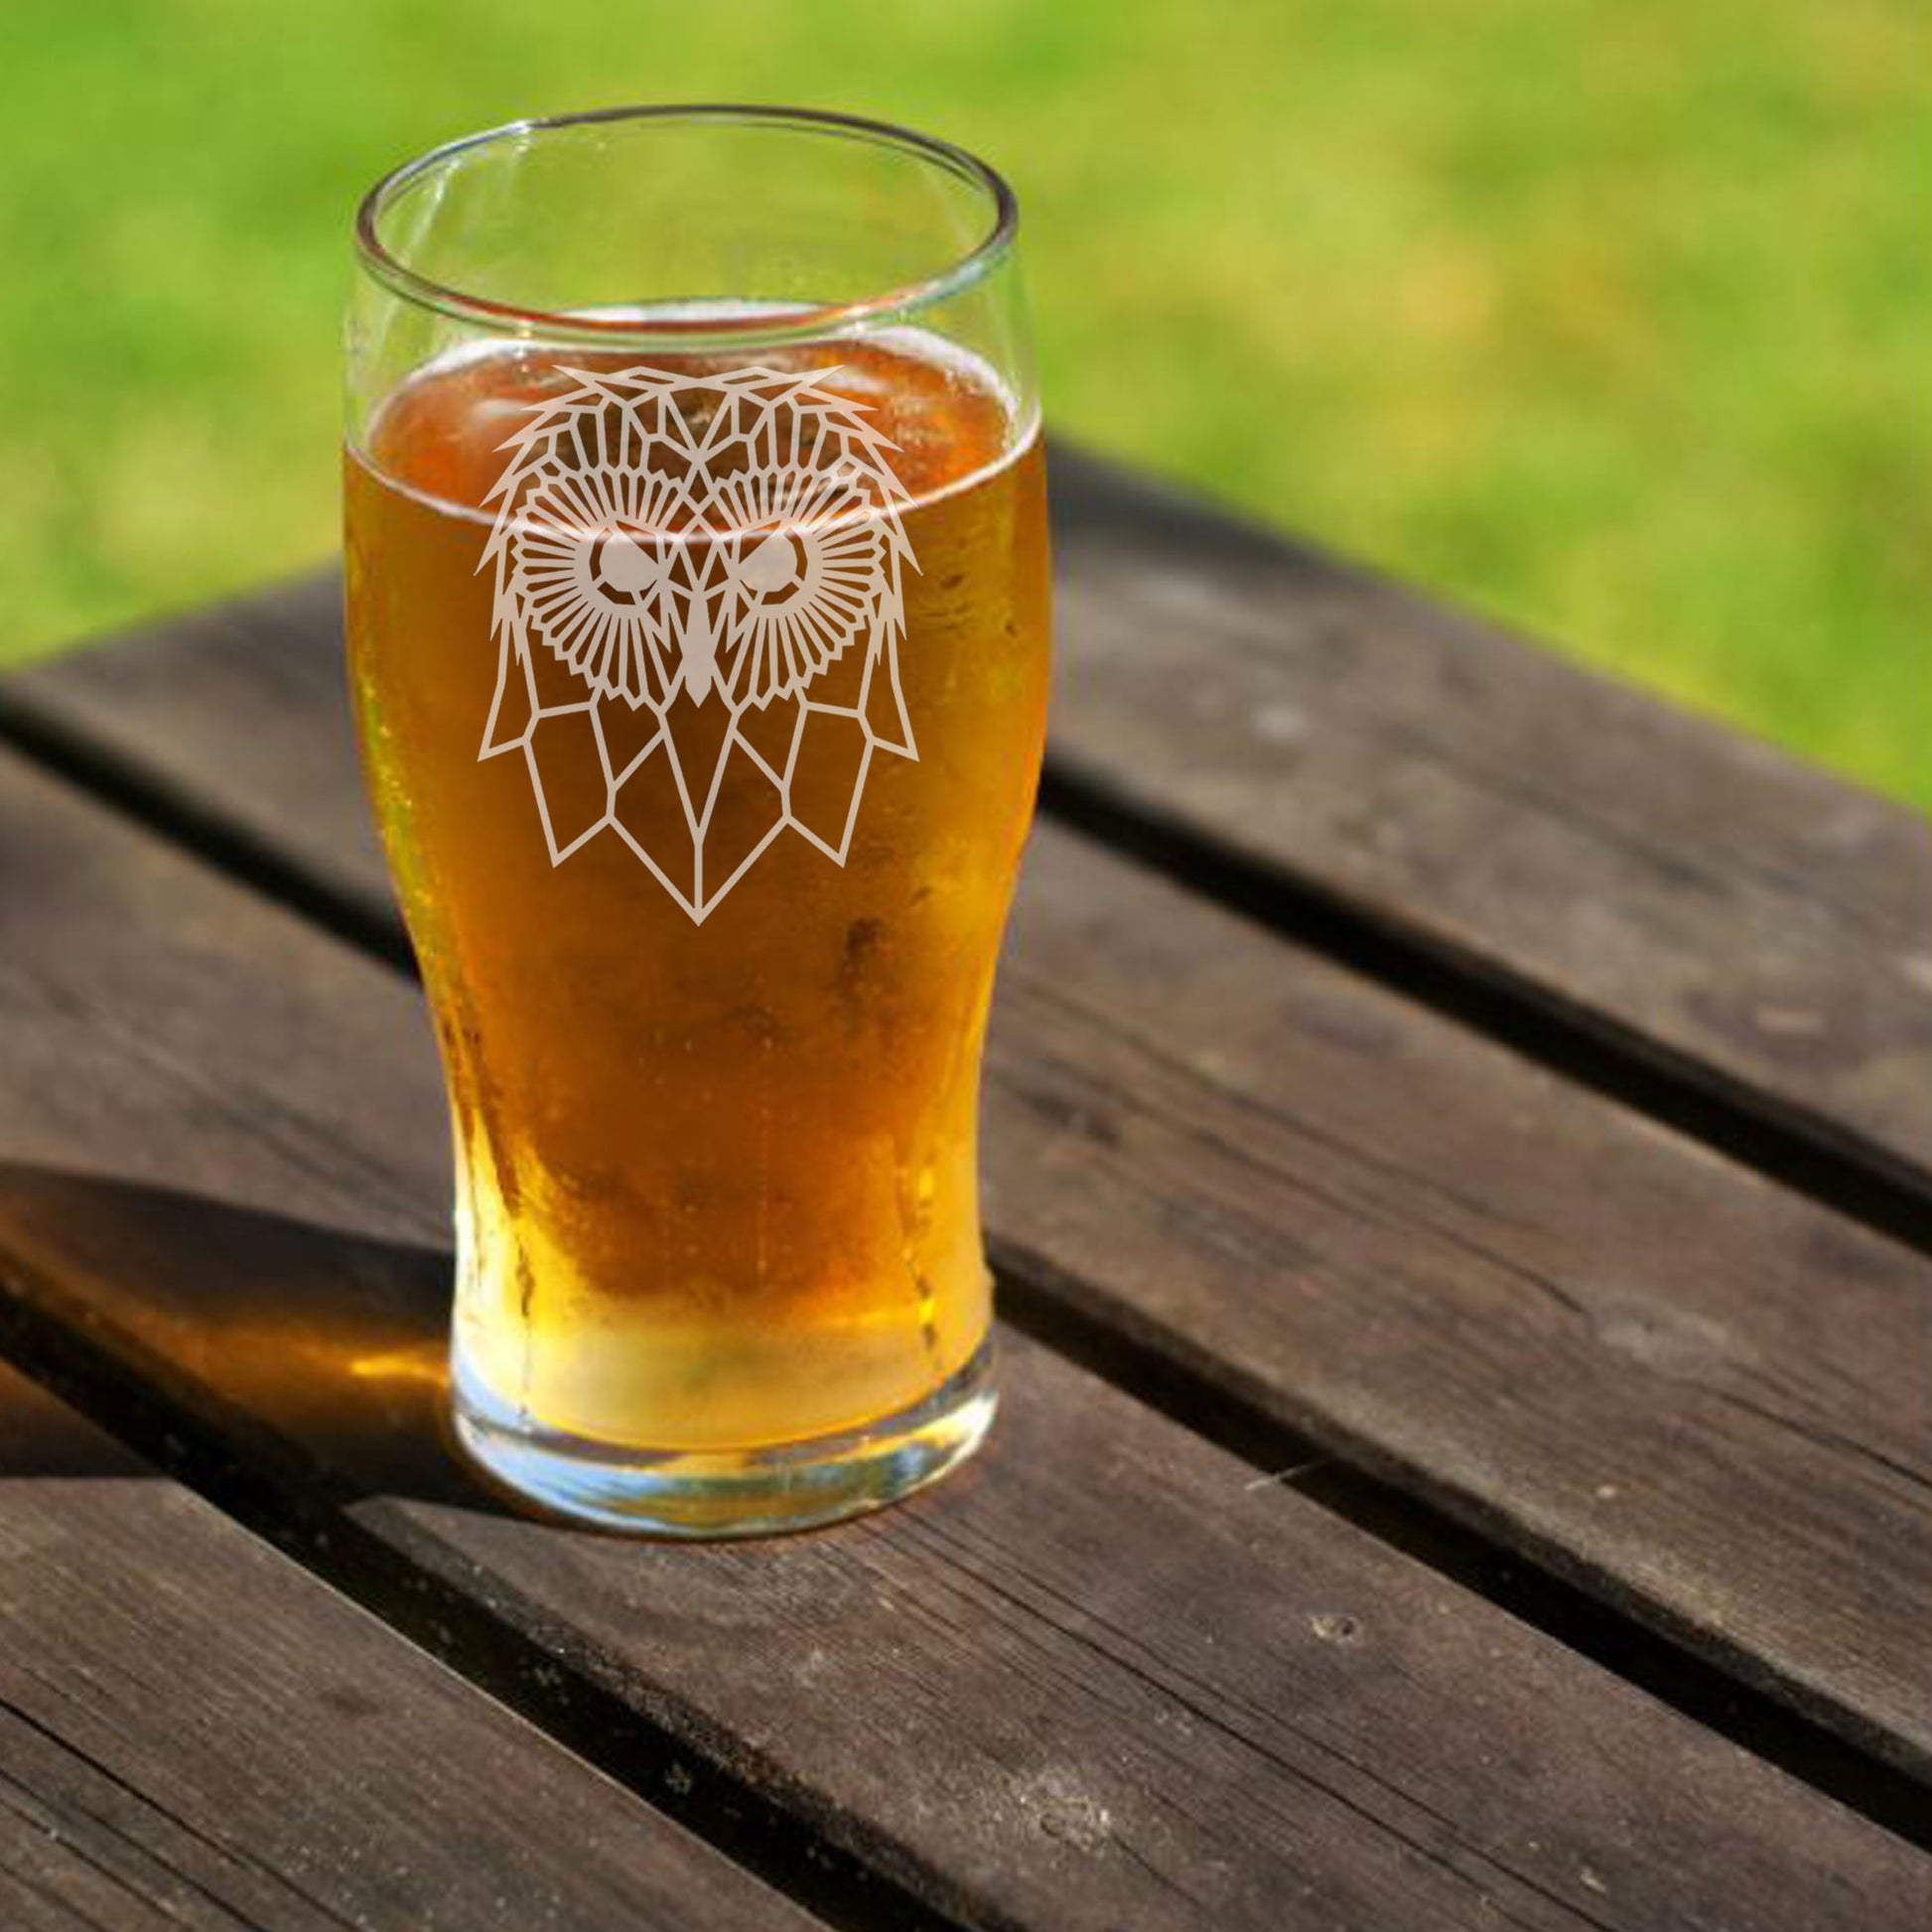 Cute Owl Engraved Beer Pint Glass  - Always Looking Good -   